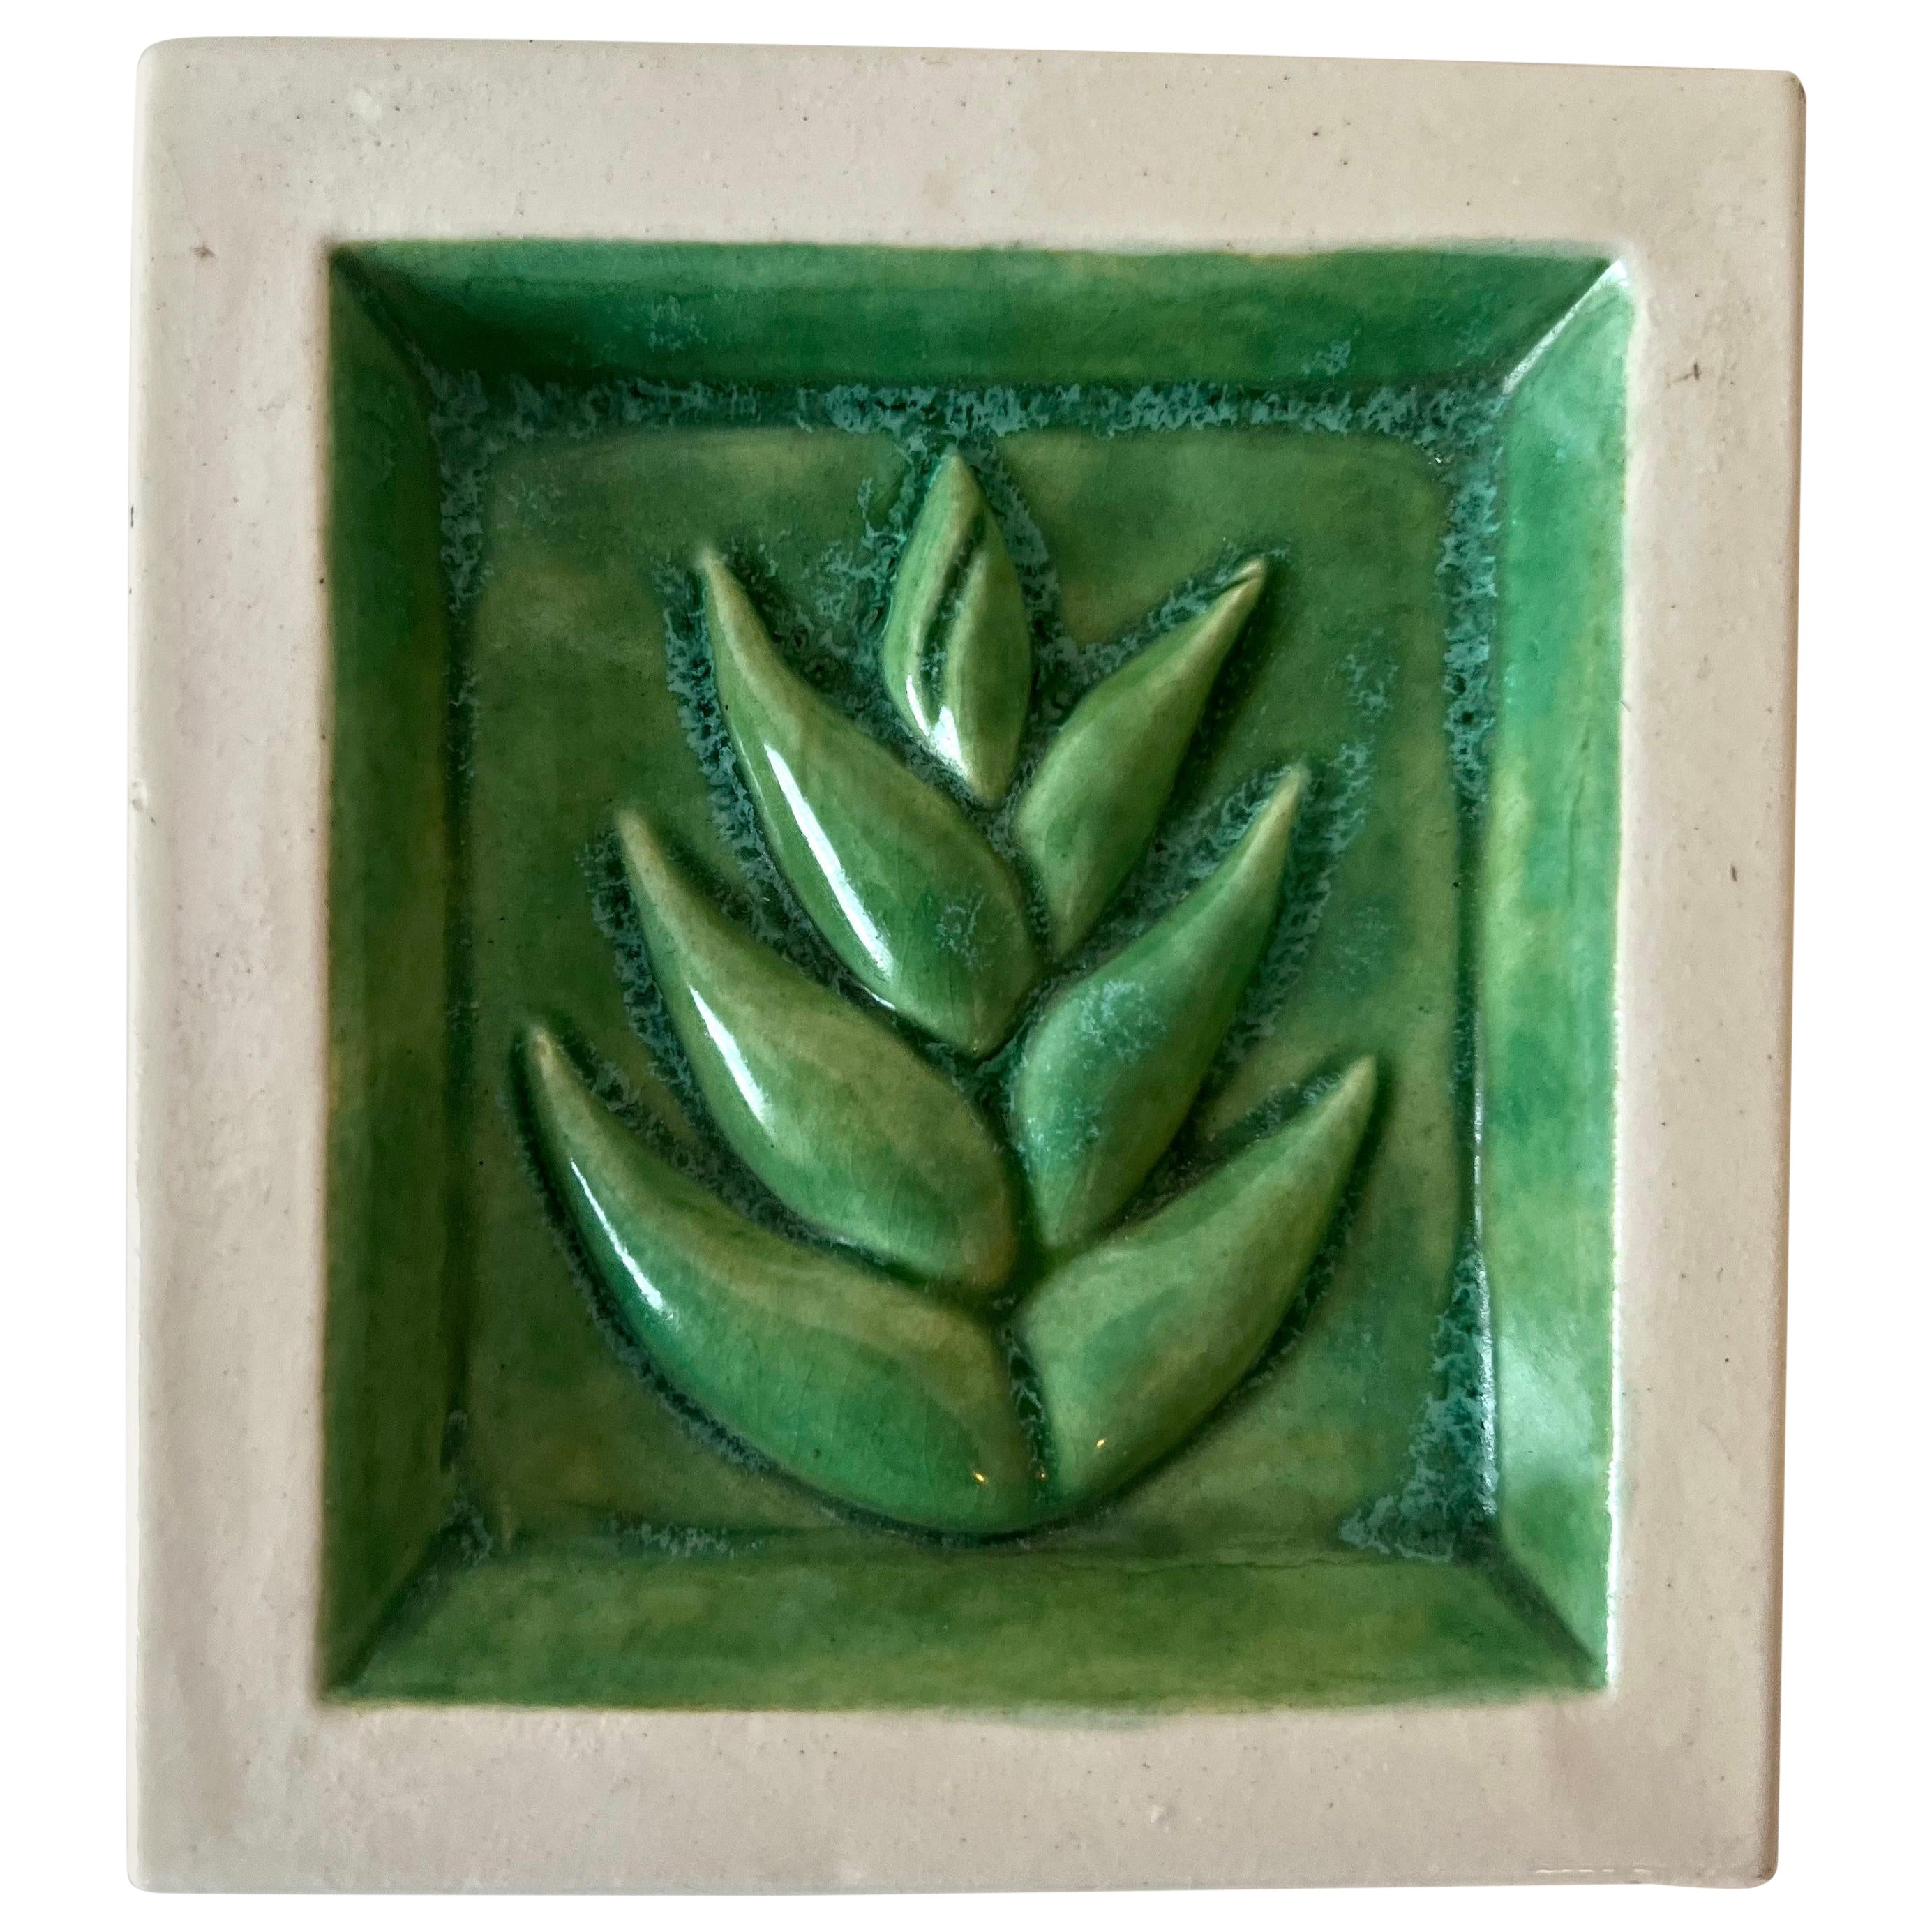 Terrakotta-Fliesenschale mit grünem Blatt